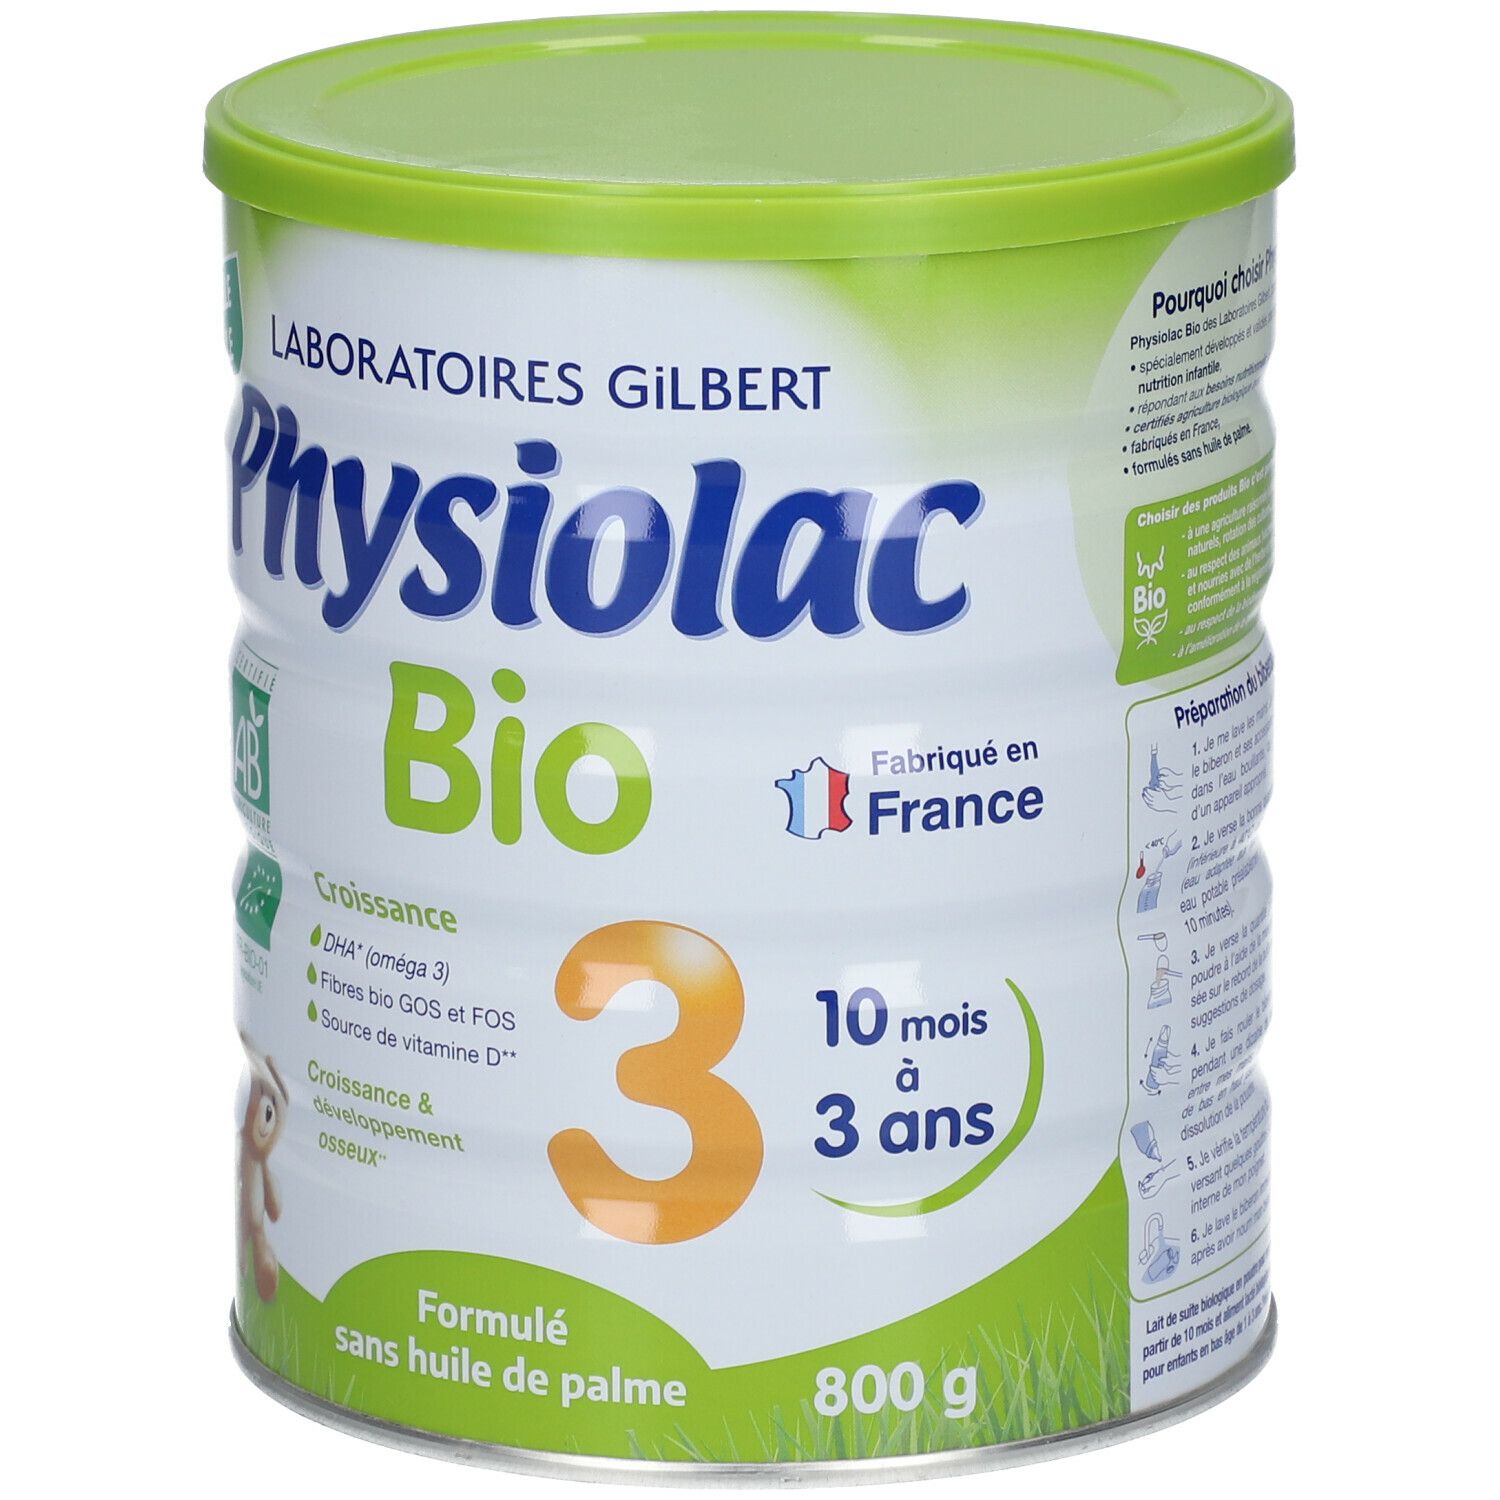 Physiolac Bio 3